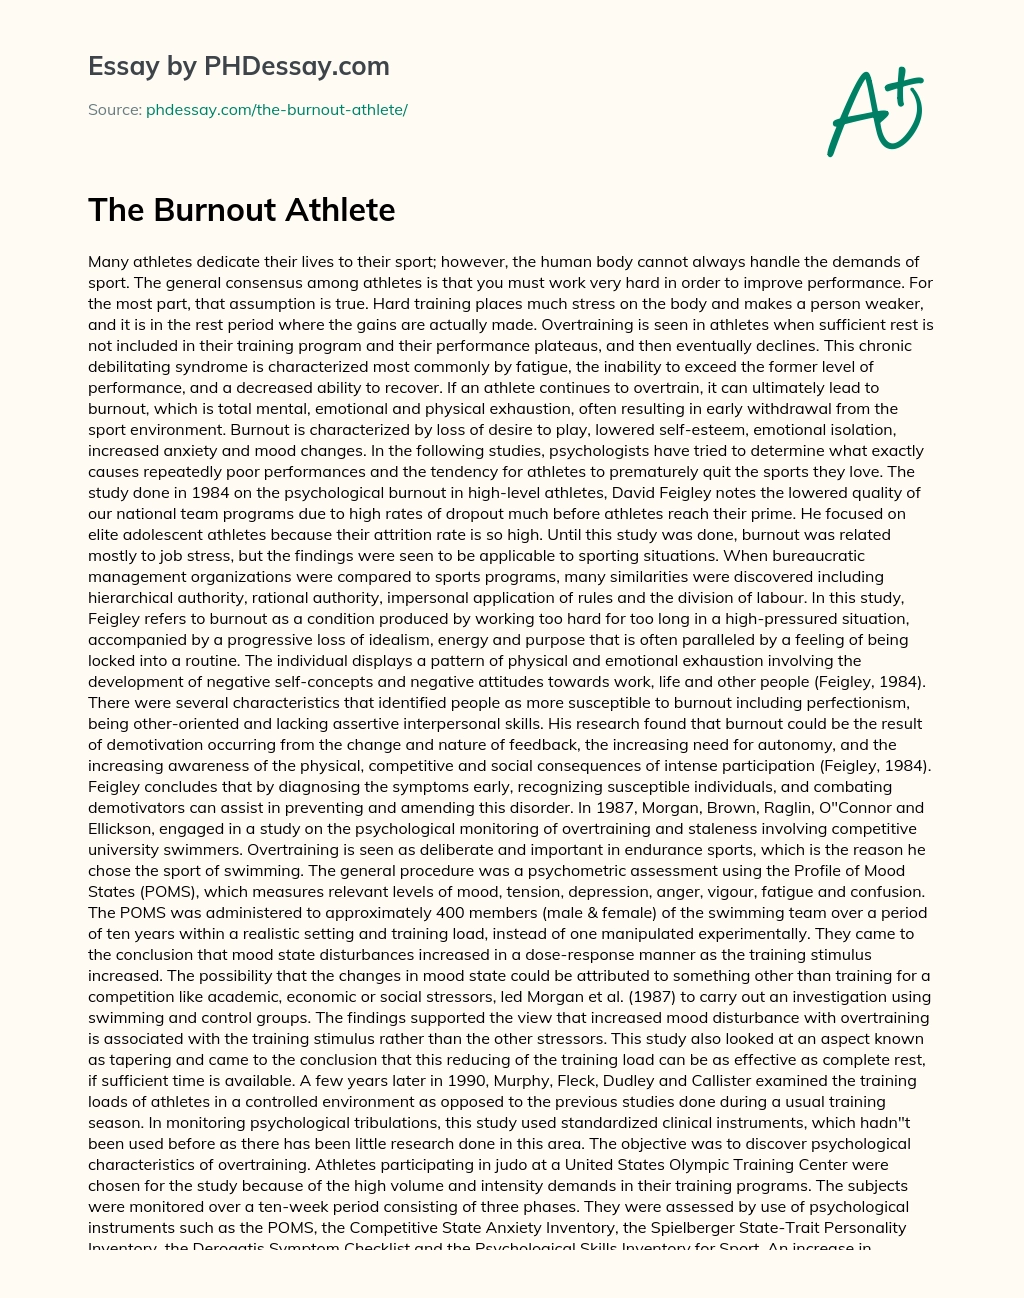 The Burnout Athlete essay